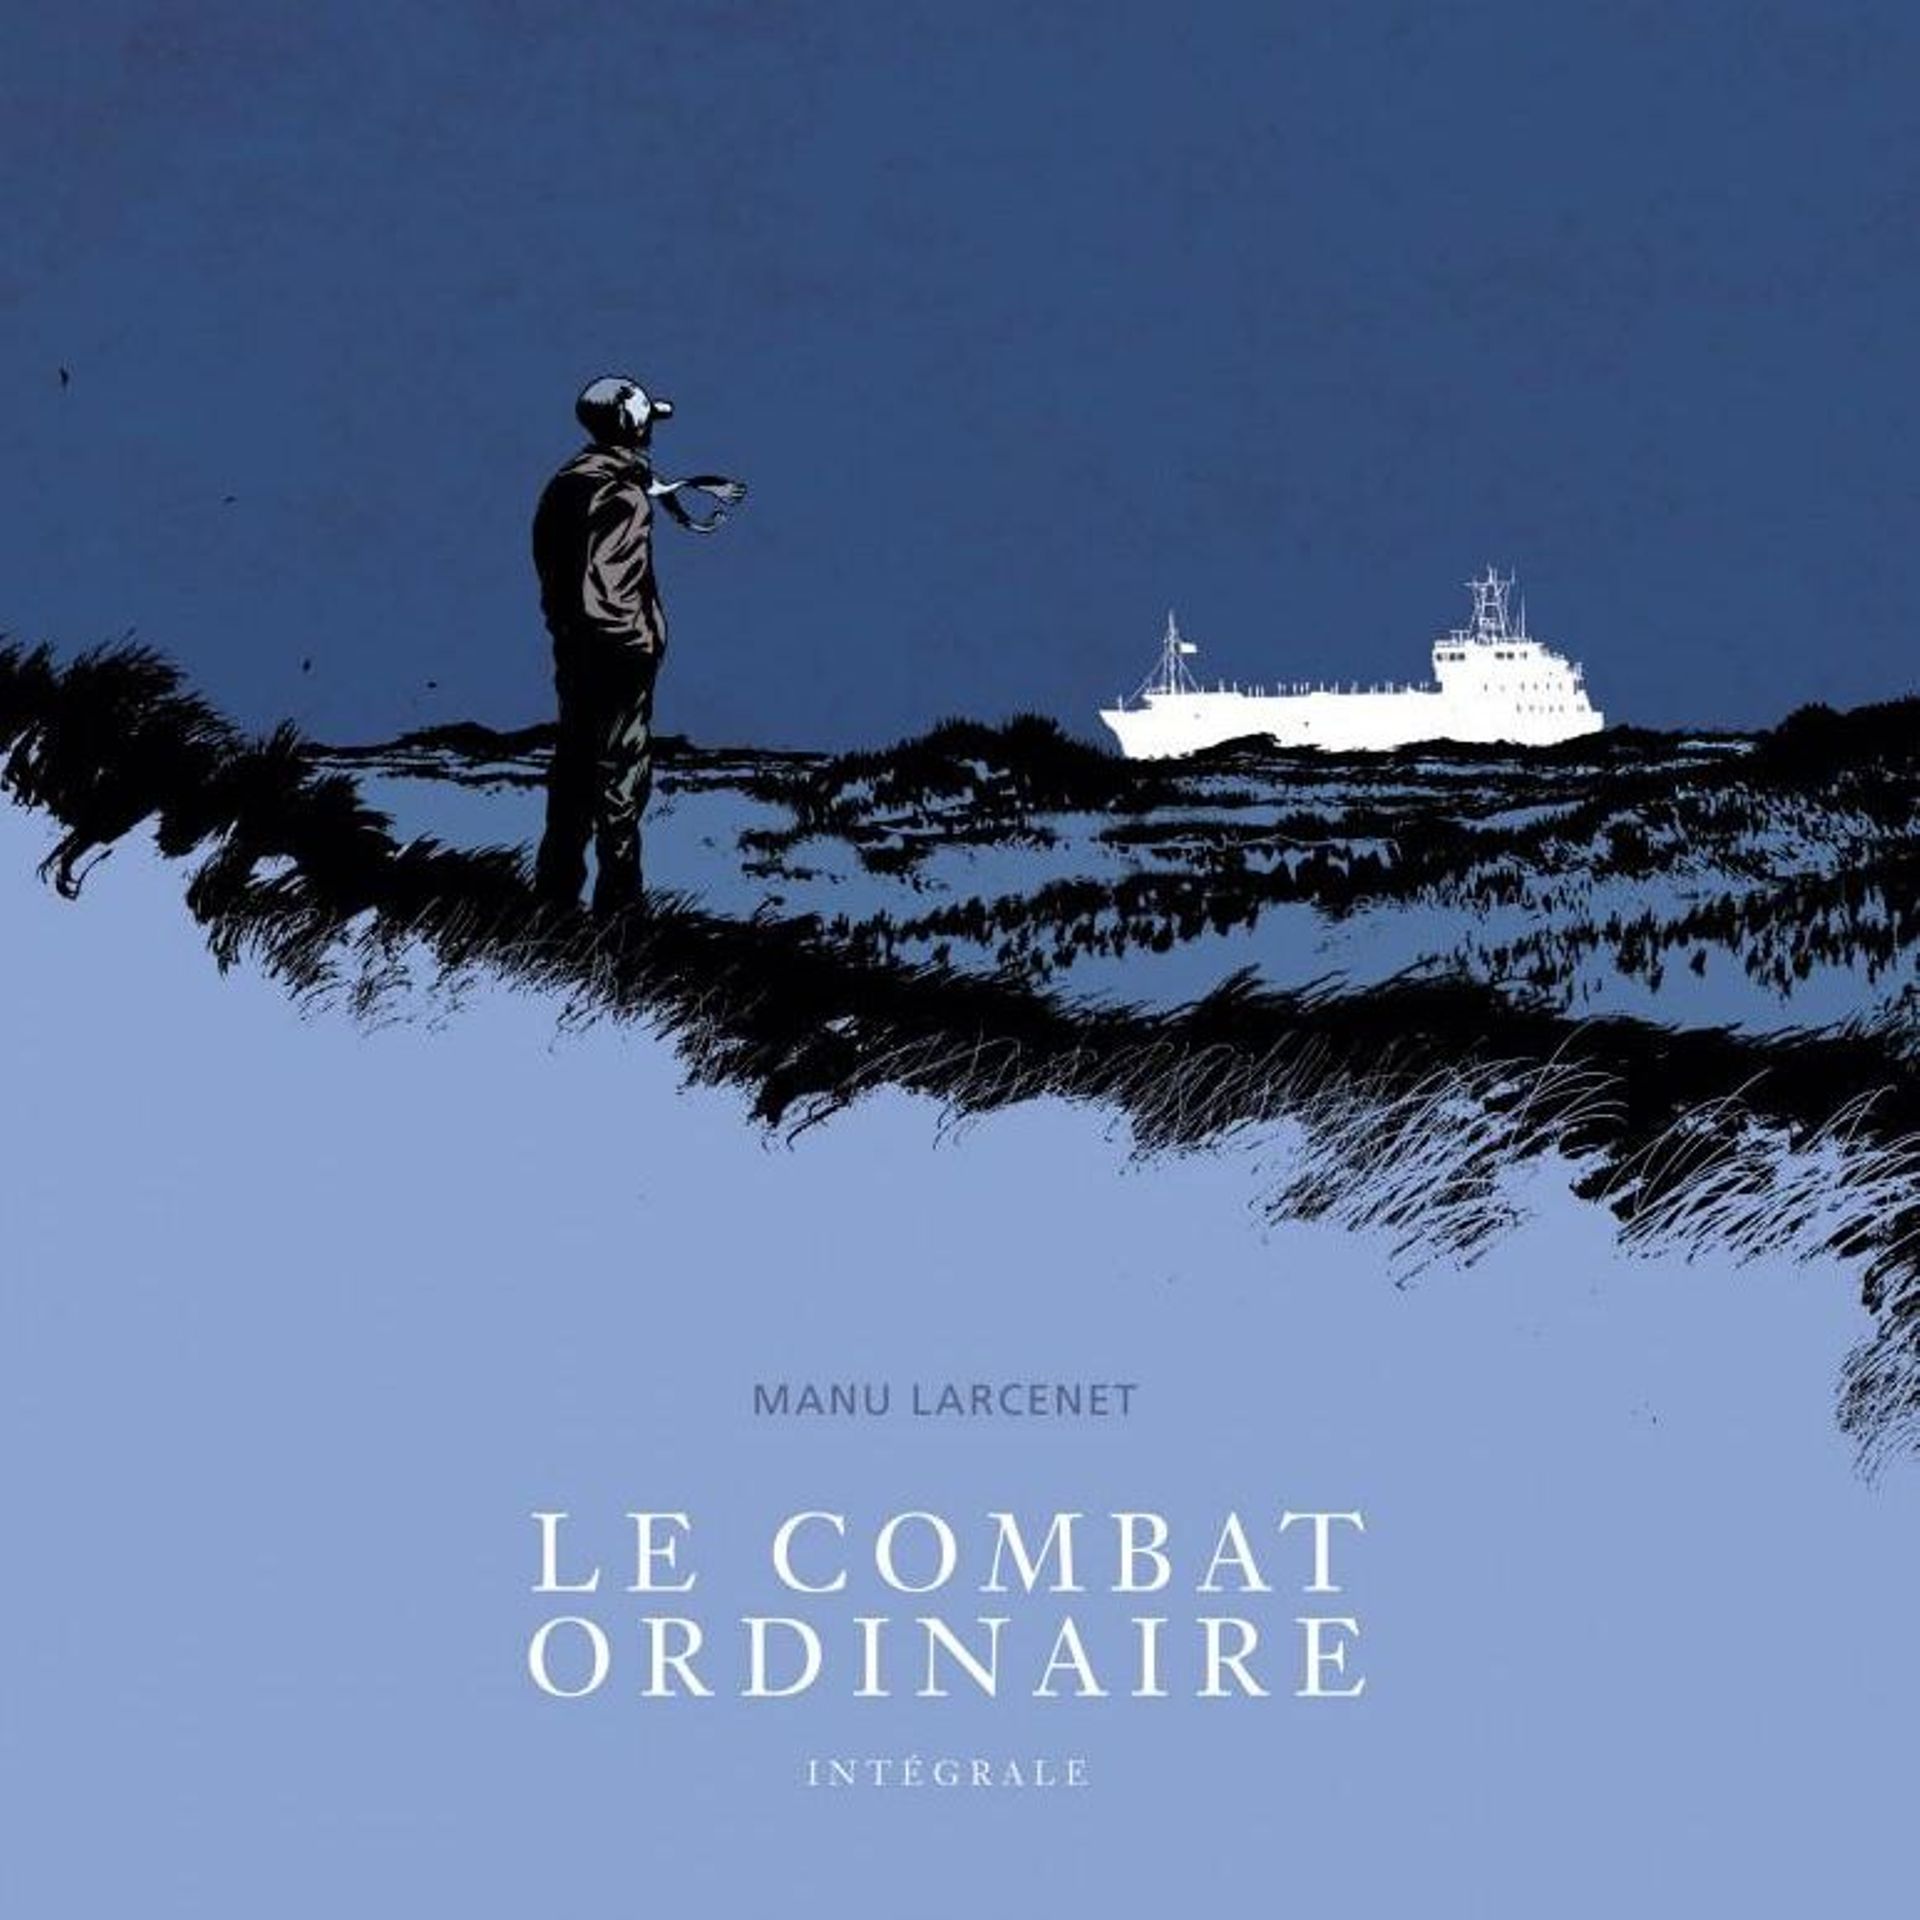 Le Combat ordinaire II, par Manu Larcenet (Le Monde diplomatique, avril  2014)